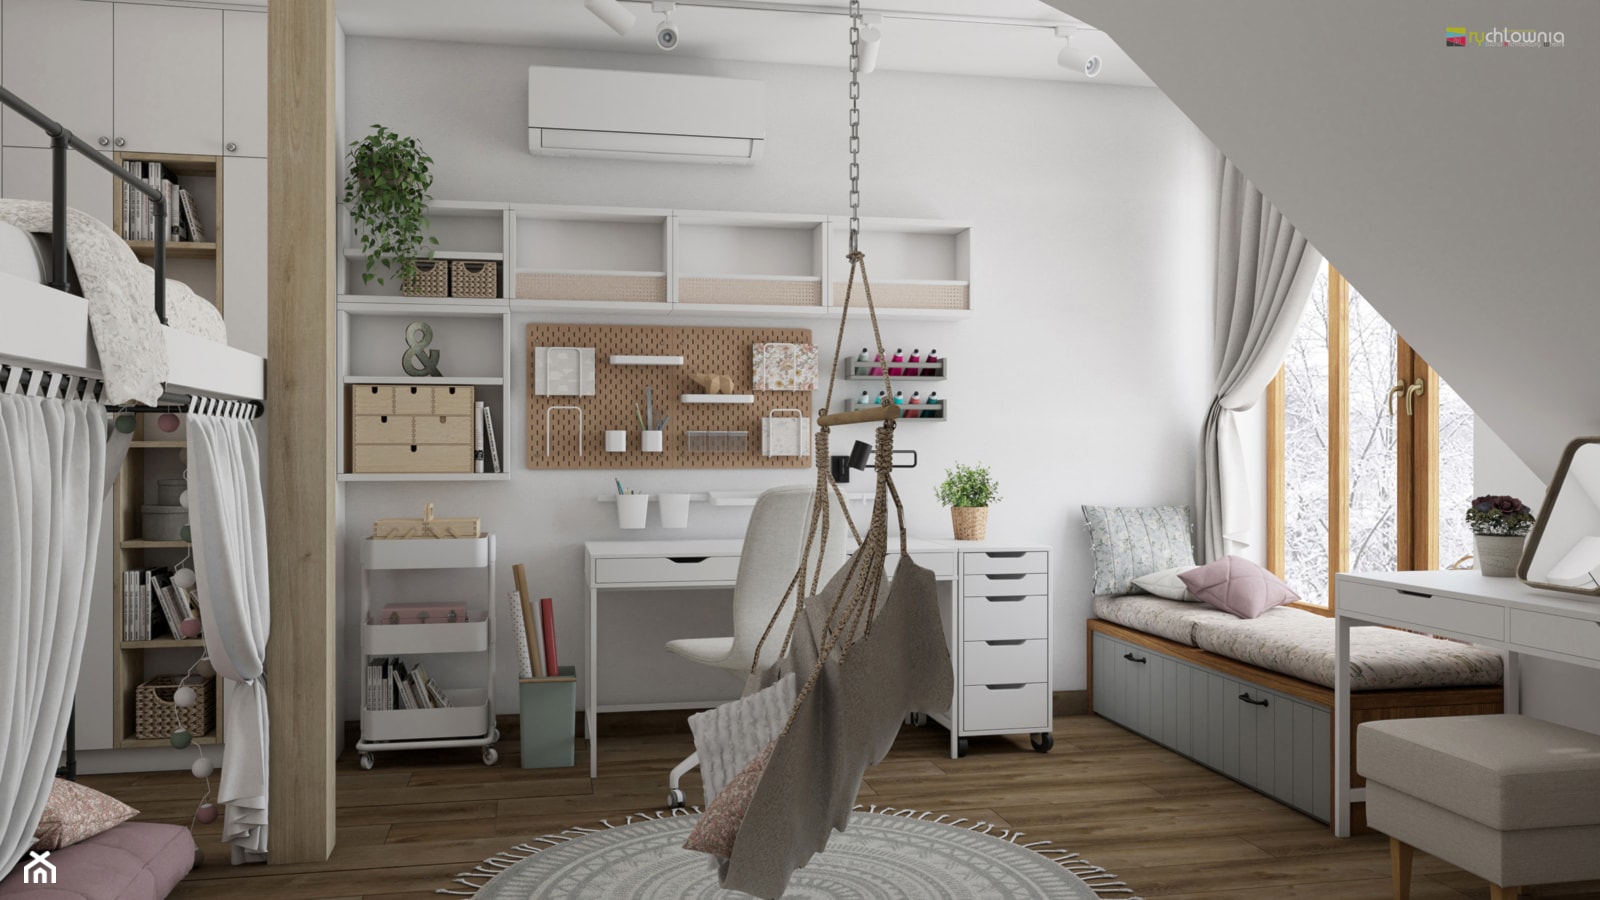 SWEET ROOM SWEET - Pokój dziecka, styl rustykalny - zdjęcie od Studio Architektury Wnętrz "rychtownia" - Homebook